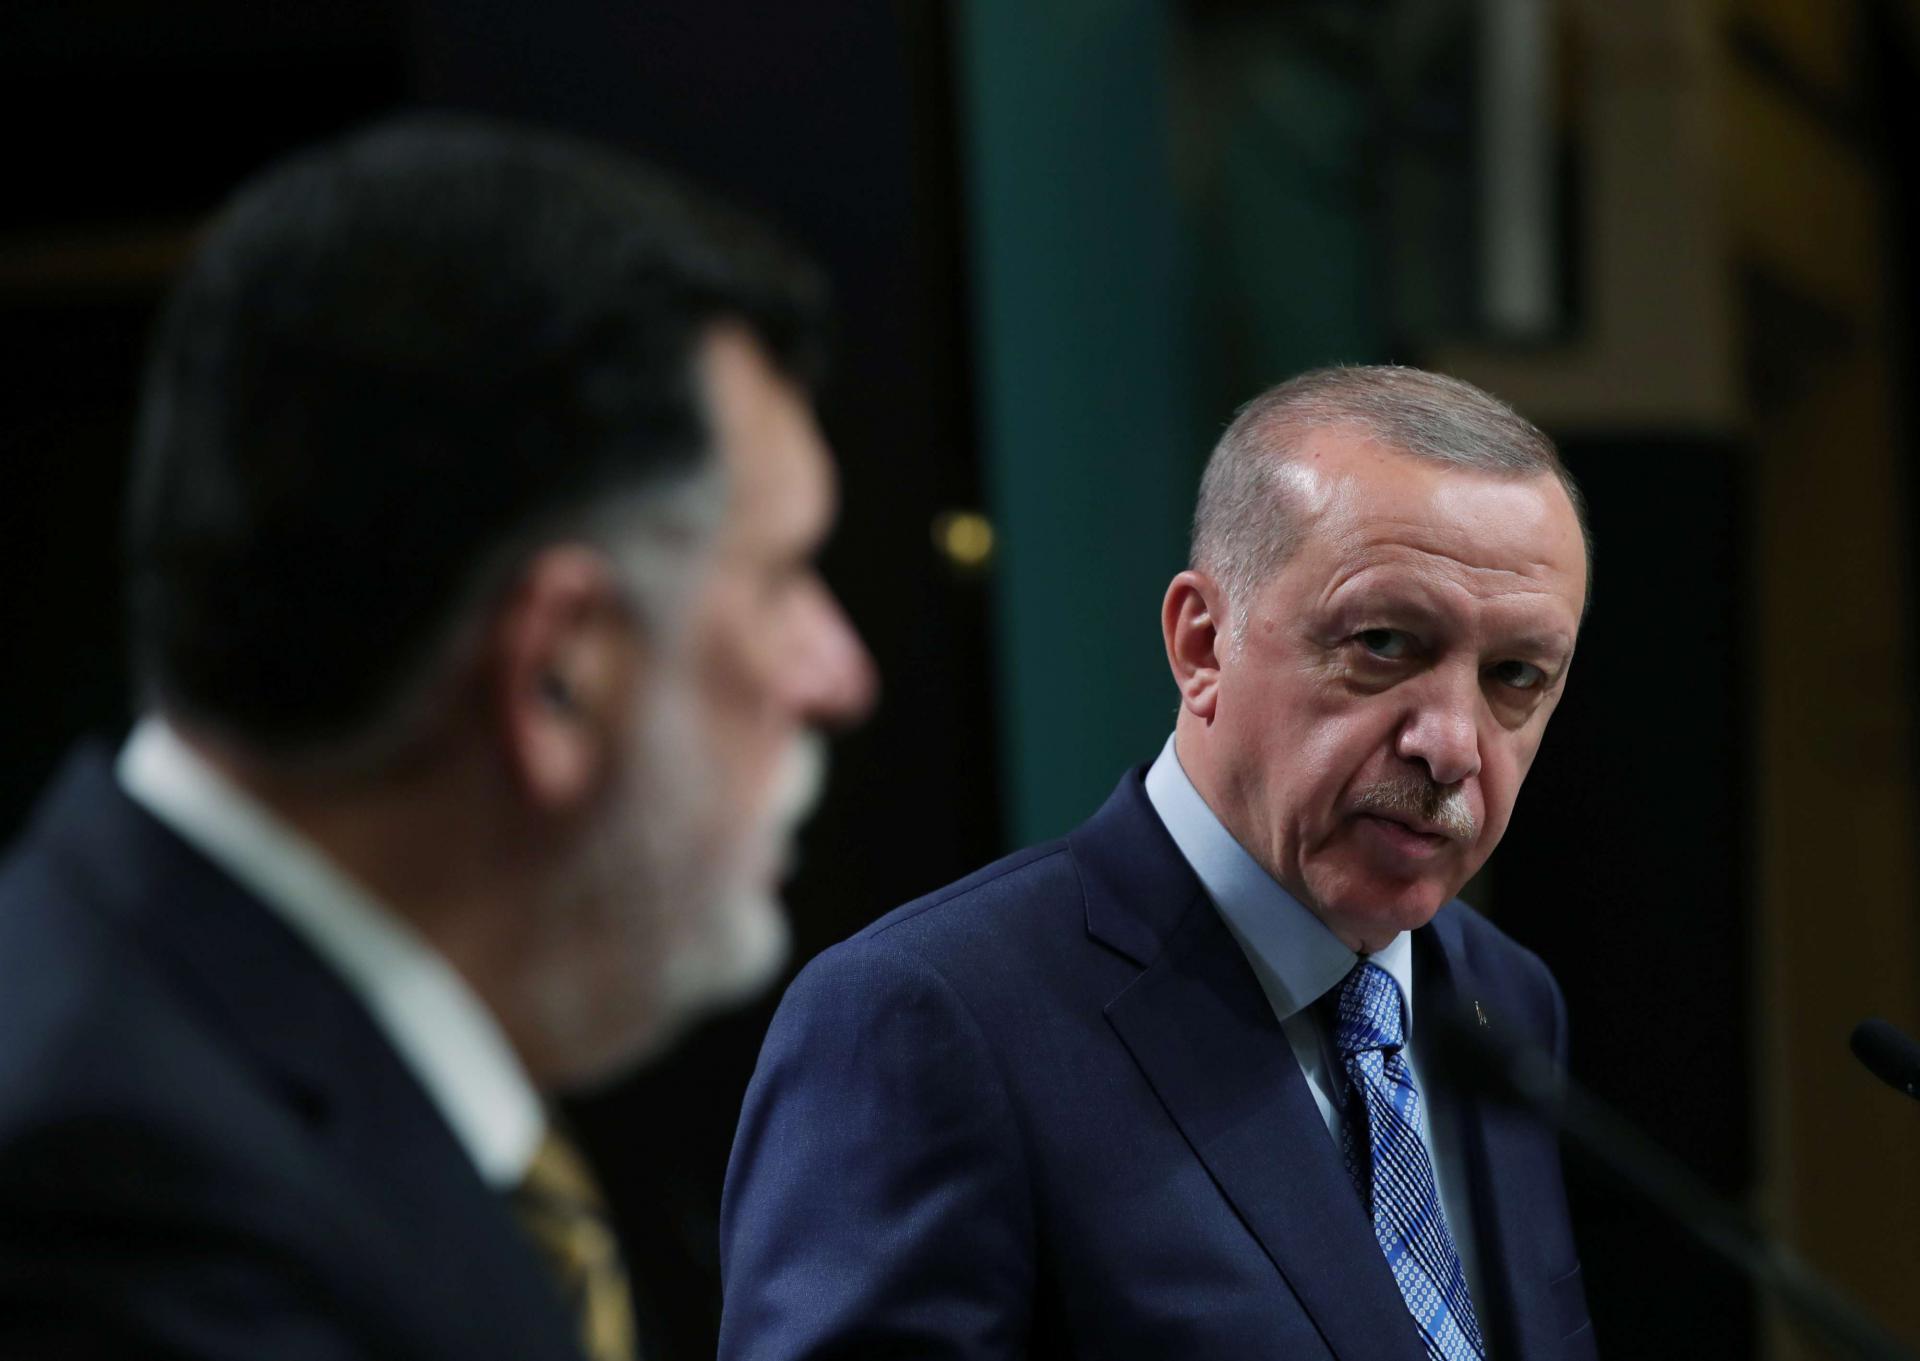 الرئيس التركي رجب طيب اردوغان ورئيس حكومة الوفاق فائز السراج